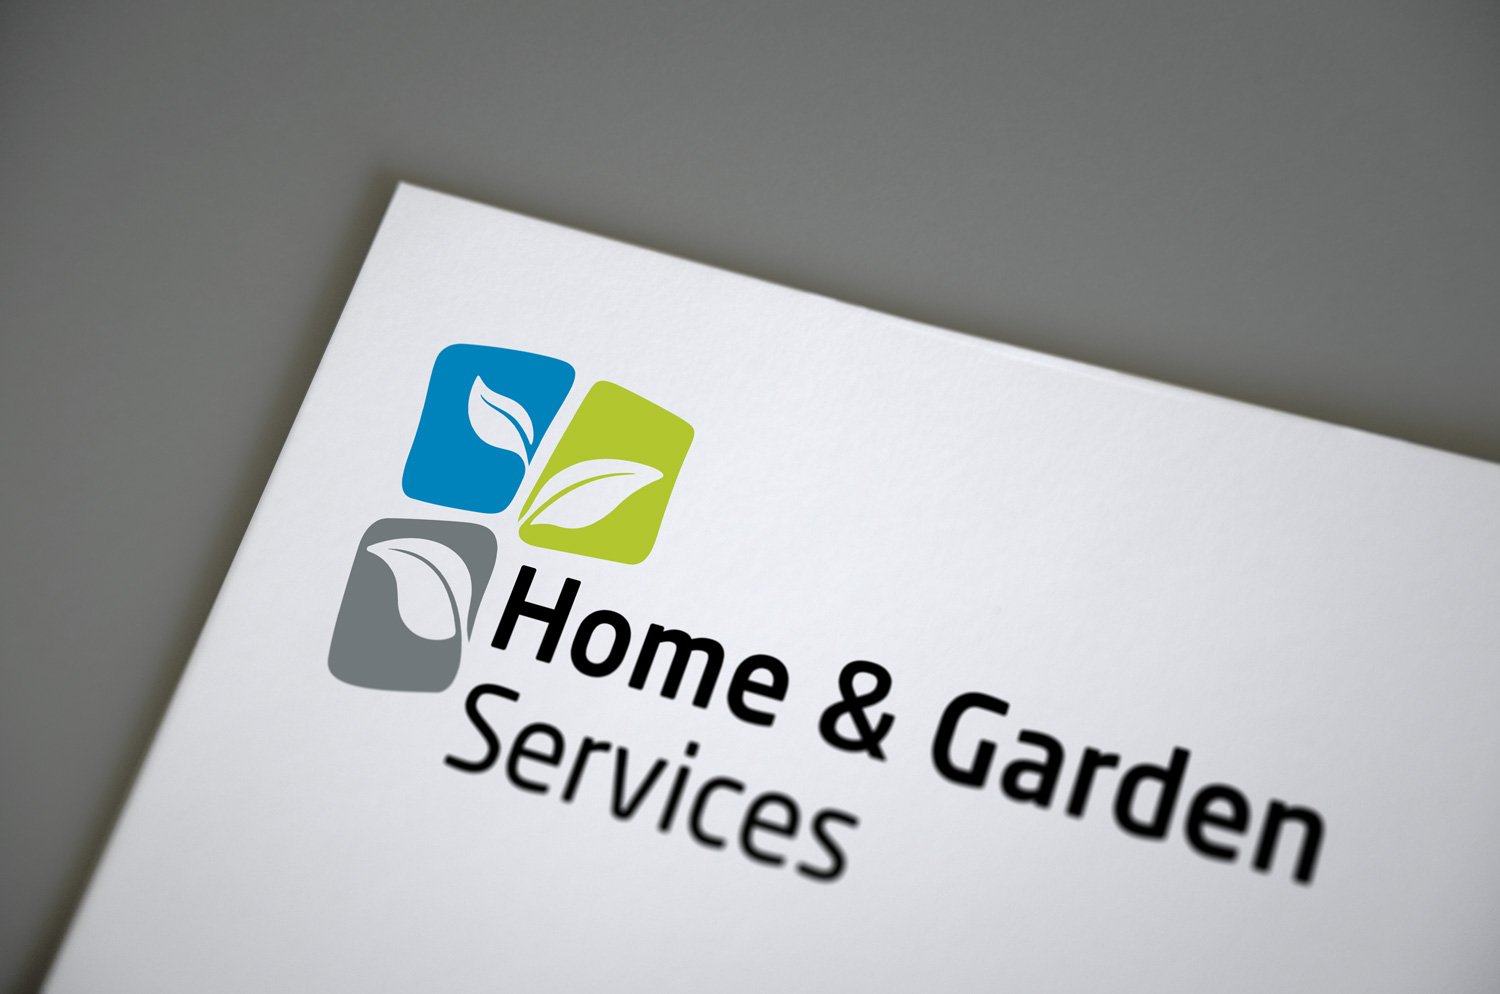 Anwendung des Logos von Home and Garden Services auf einem Briefpapier.